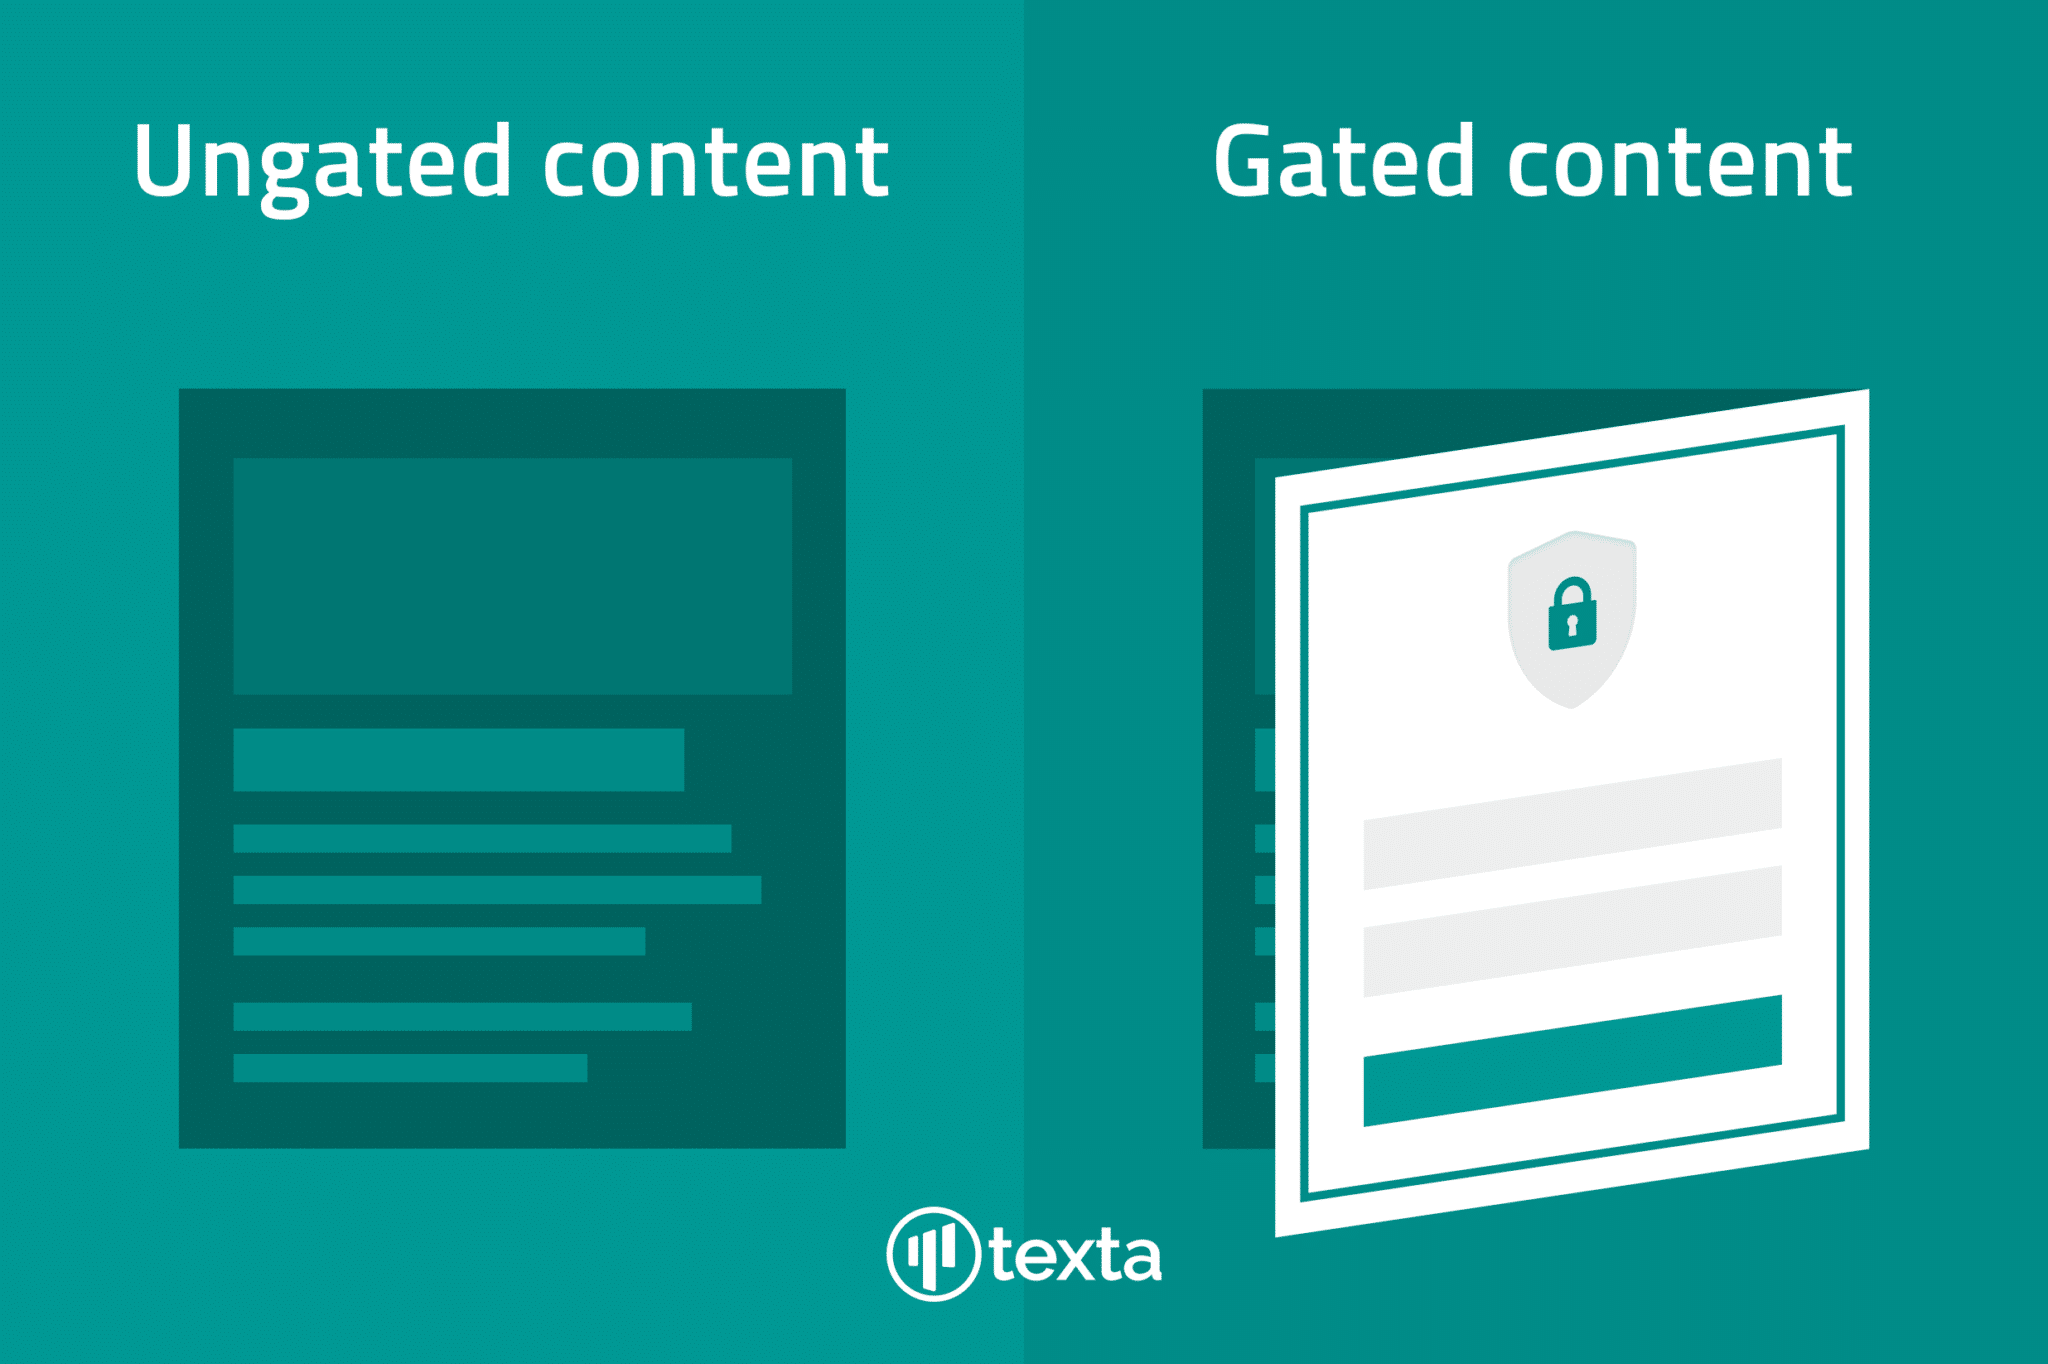 Gates content vs. ungated content